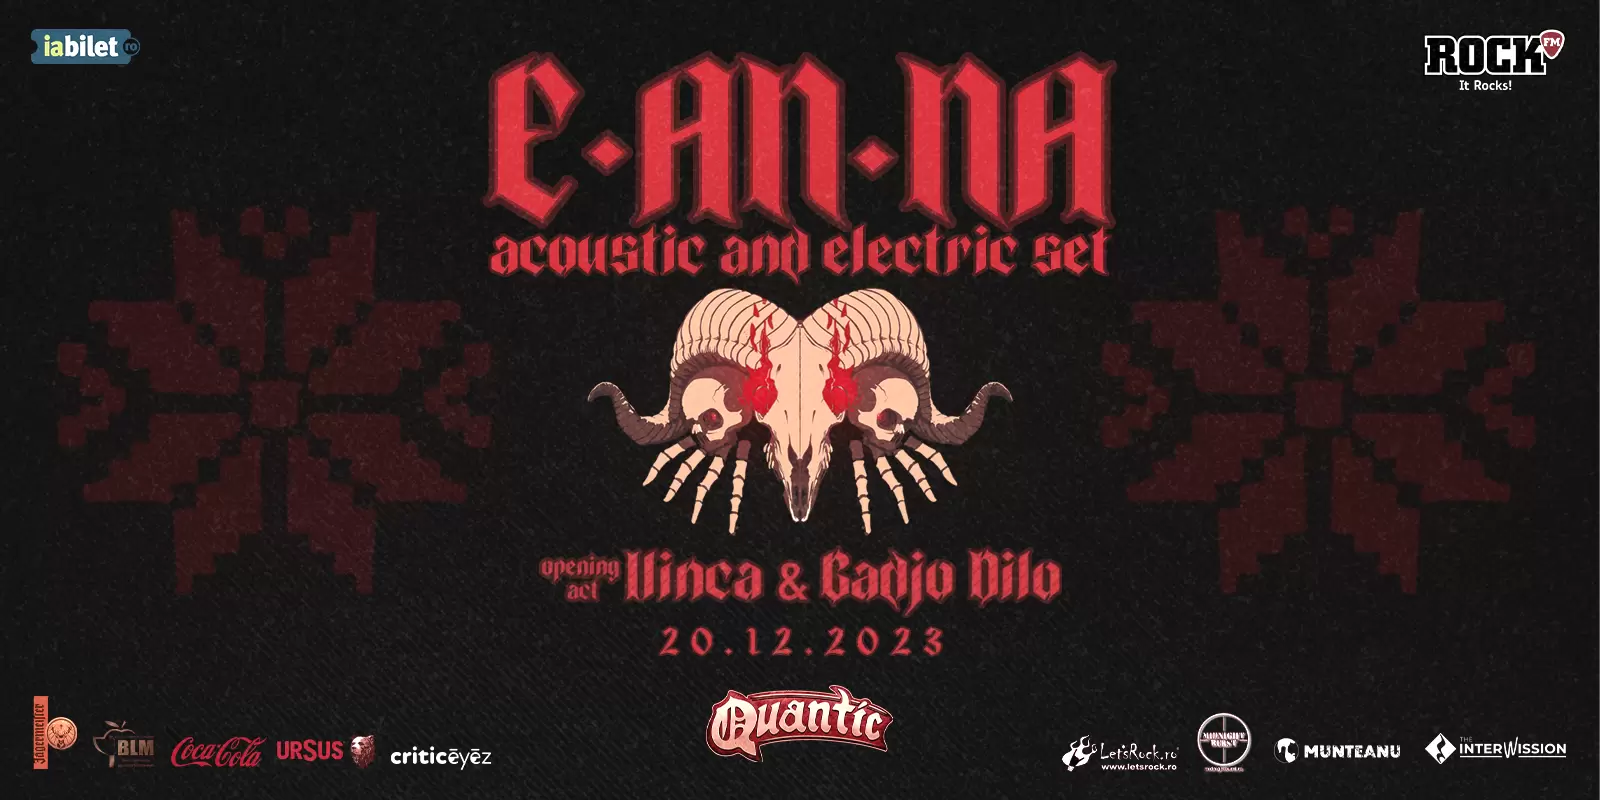 Cronică E-An-Na - Special Electric & Acoustic Concert - în club Quantic, 20 decembrie 2023